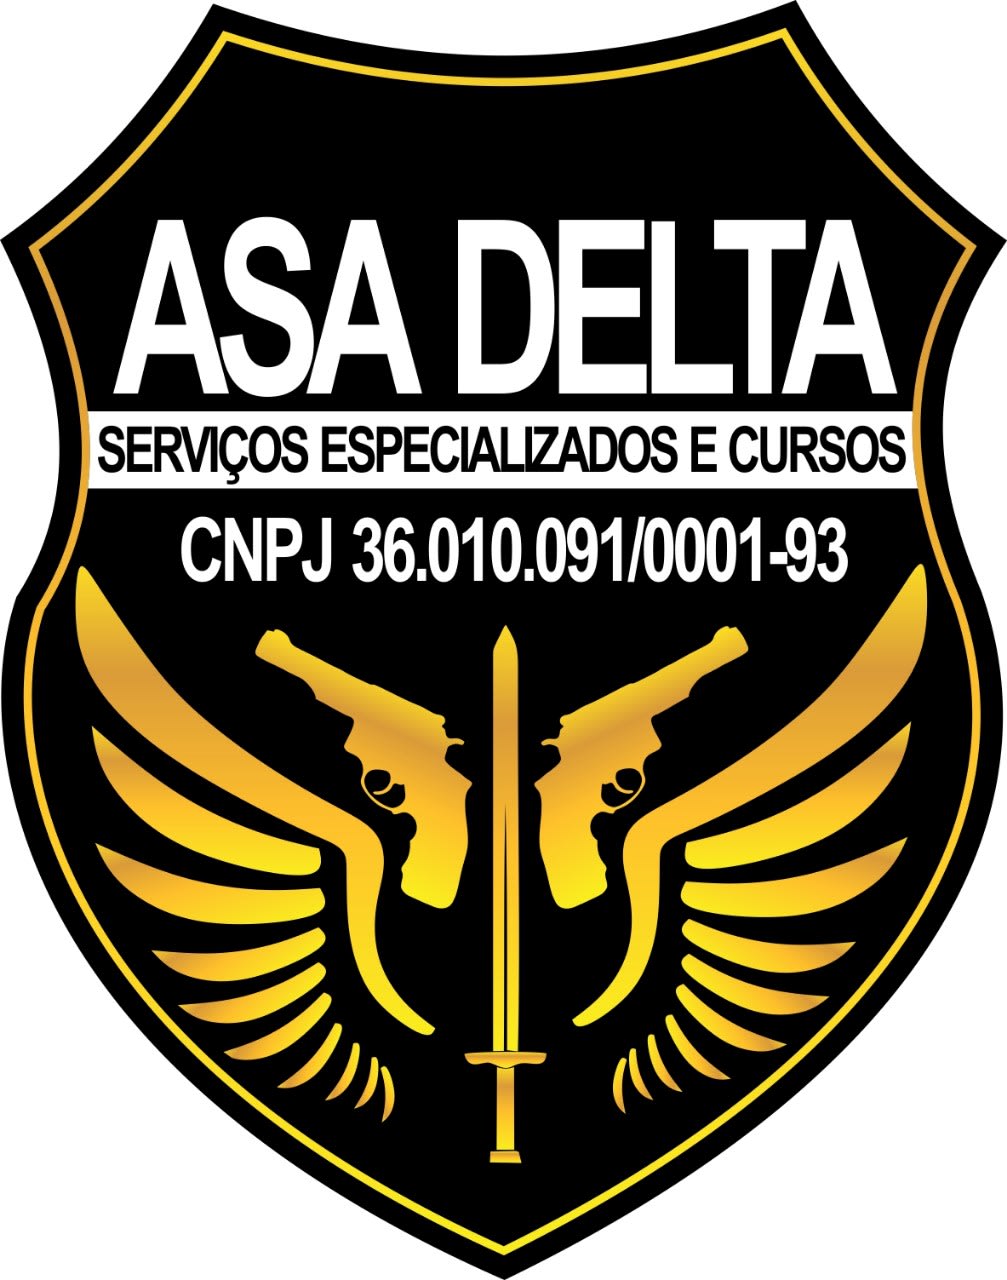 Asa Delta Serviços Especializados e Cursos